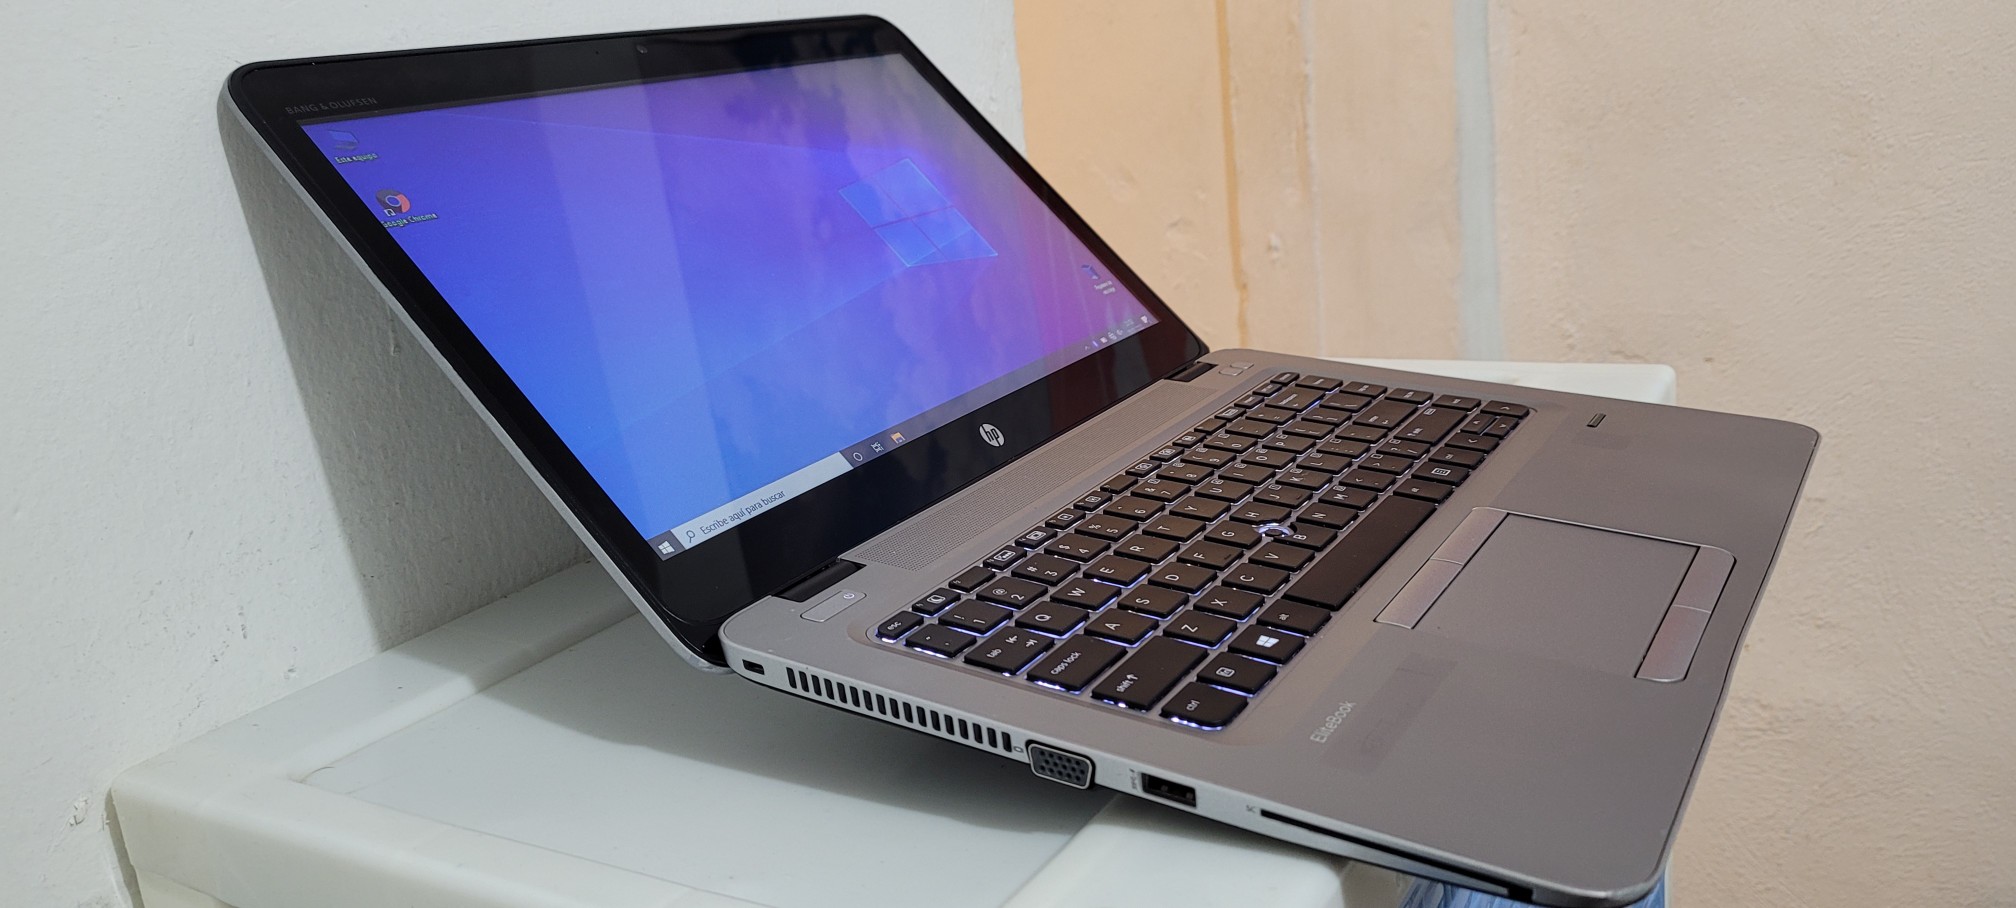 computadoras y laptops - Laptop hp Touch 14 Pulg Core i5 7ma Gen Ram 8gb ddr4 Disco 128gb Y 320gb full 1